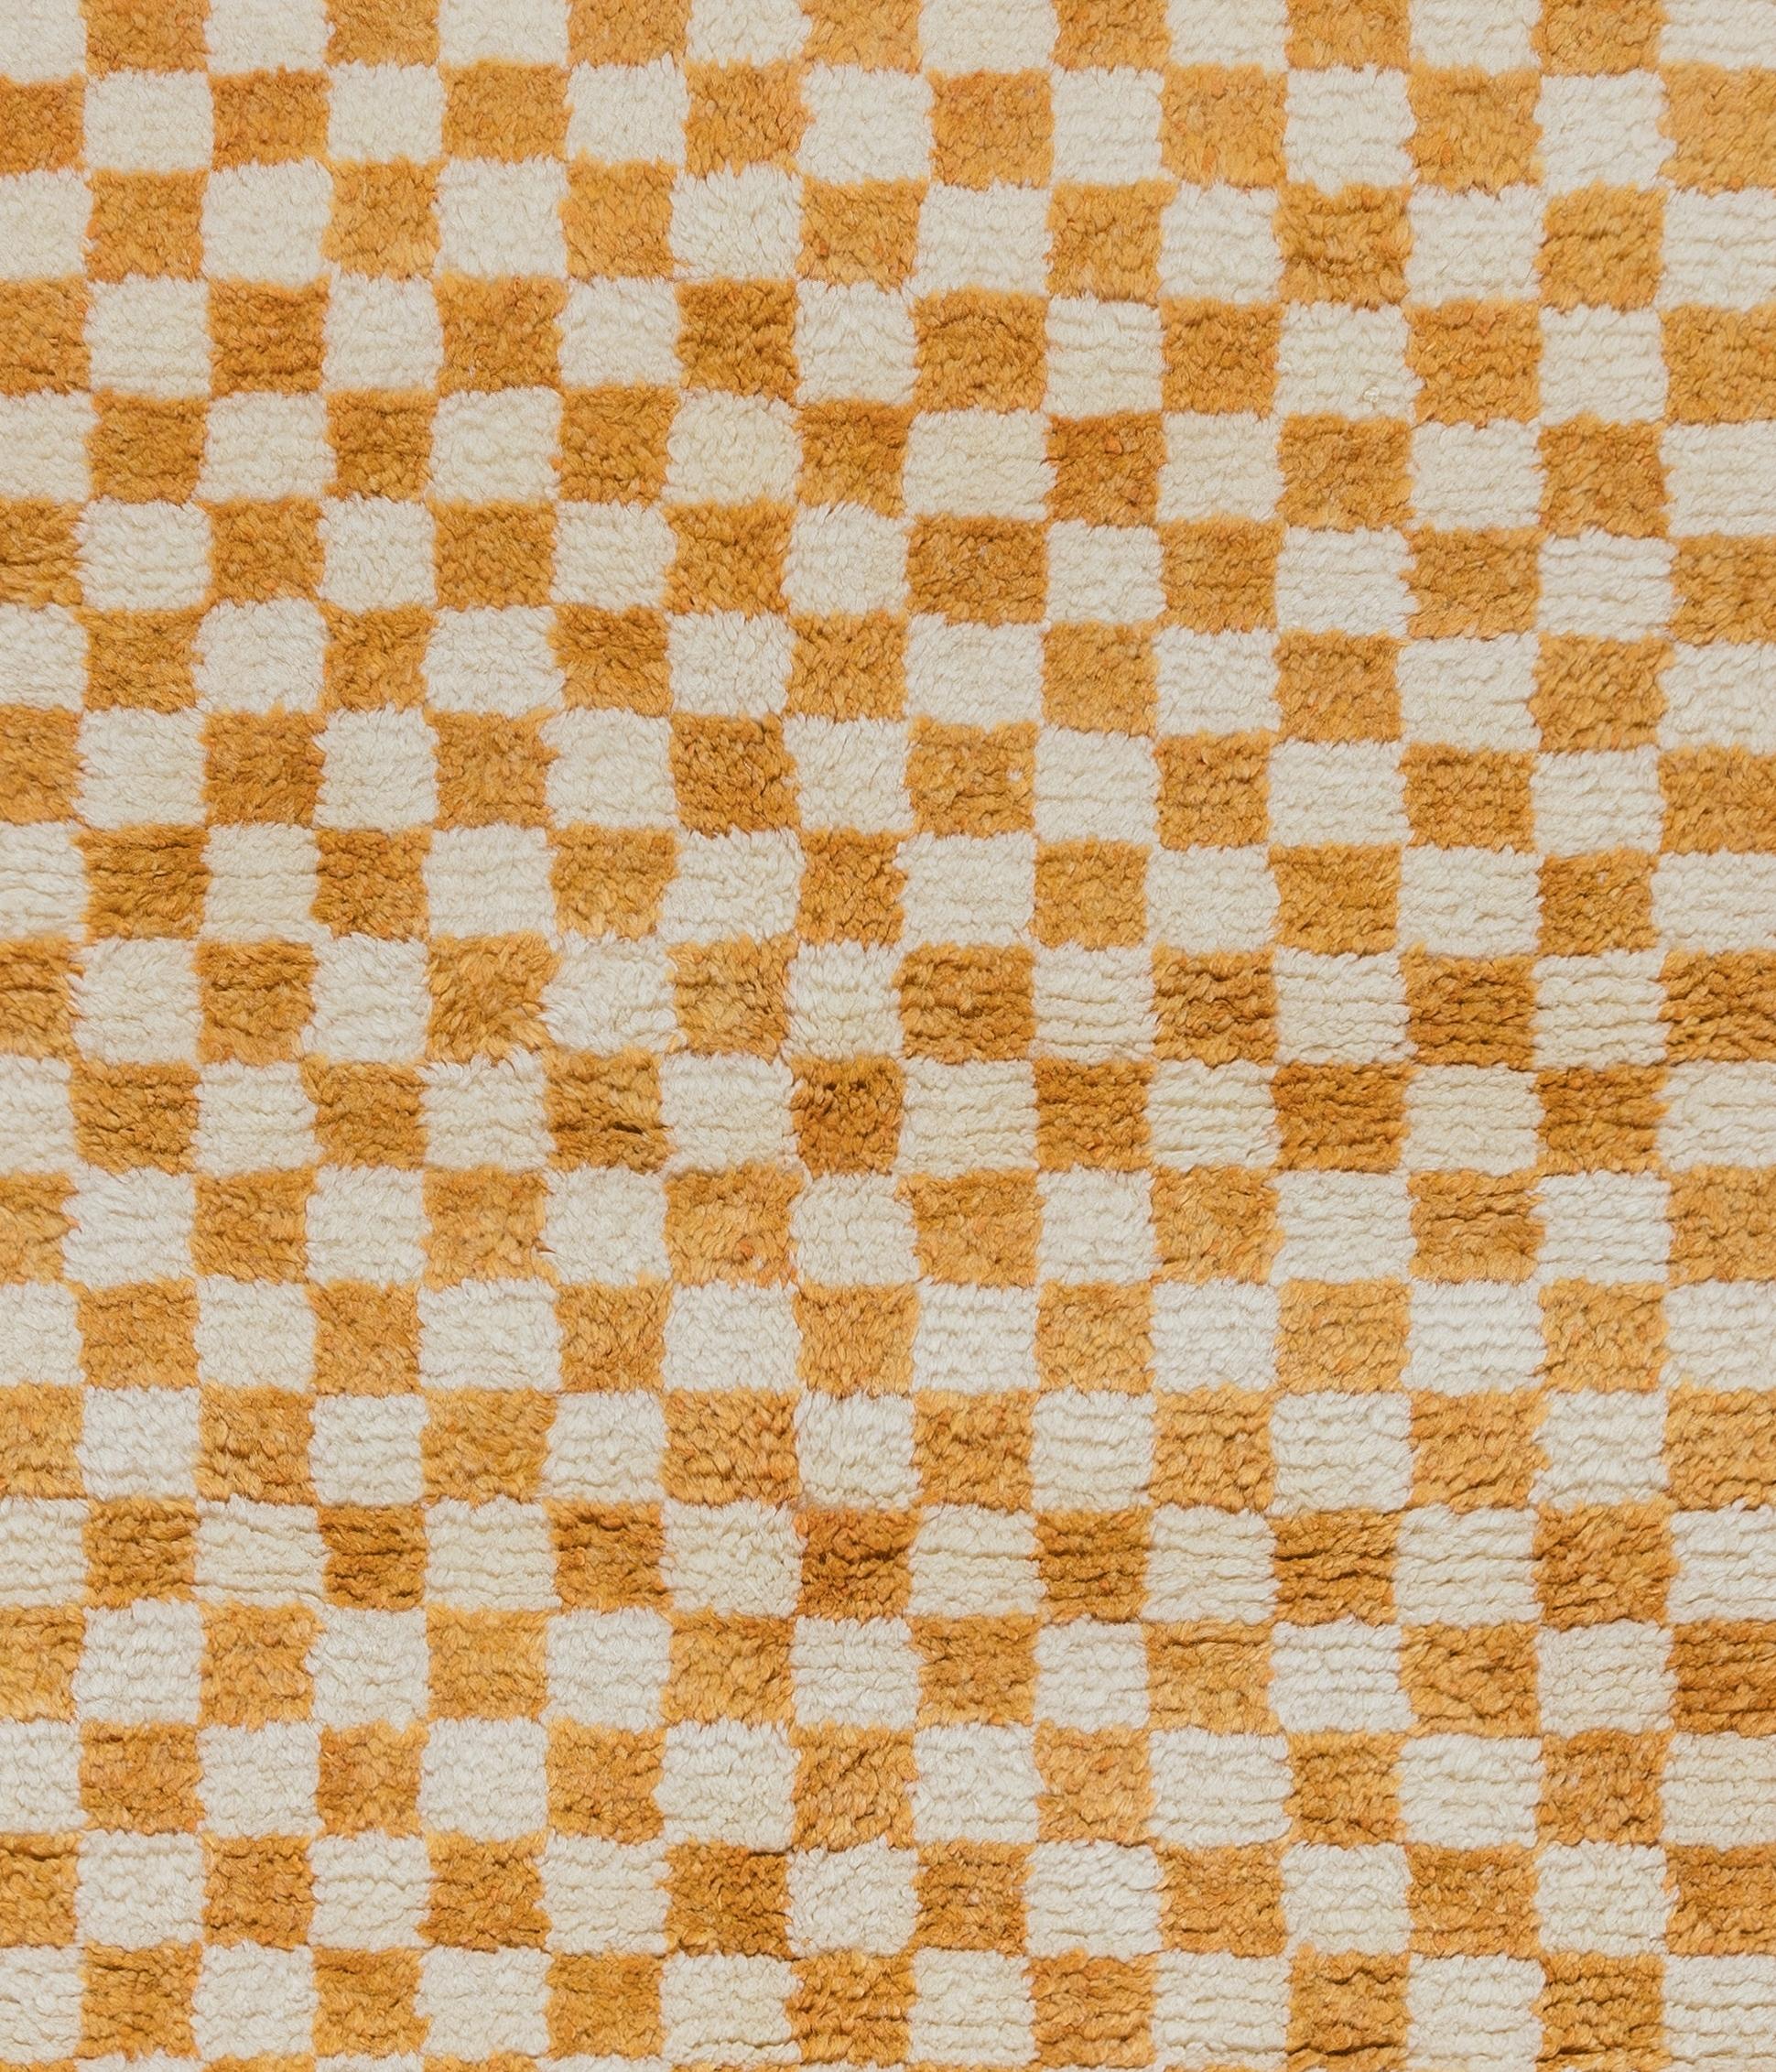 Turkish 4x6 Ft Custom Handmade Checkered Design 